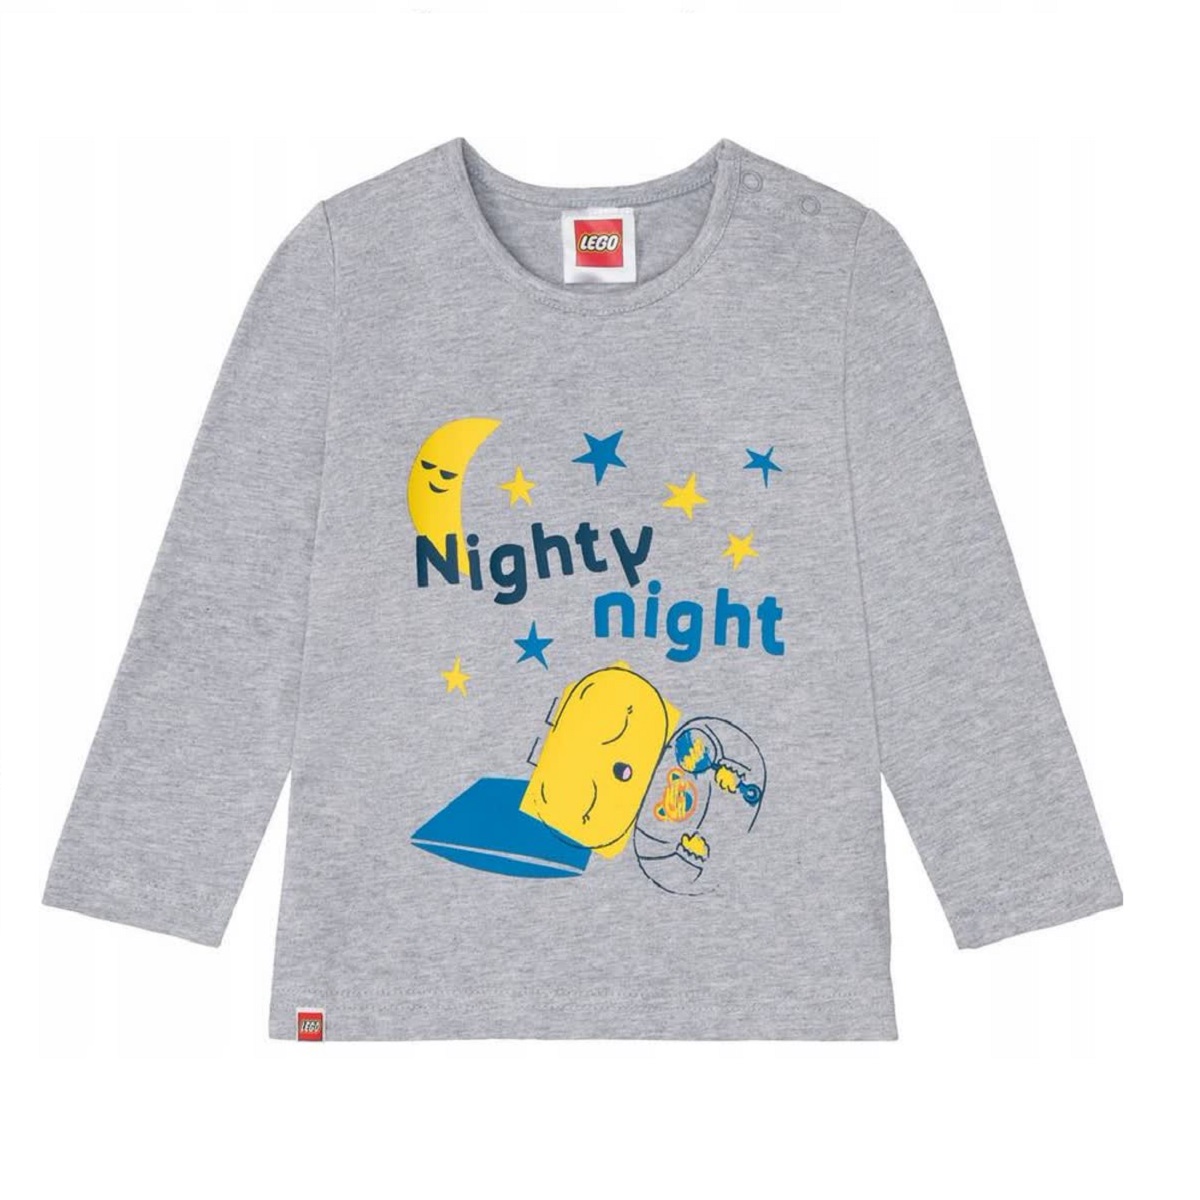 تی شرت آستین بلند پسرانه لگو مدل nighty night